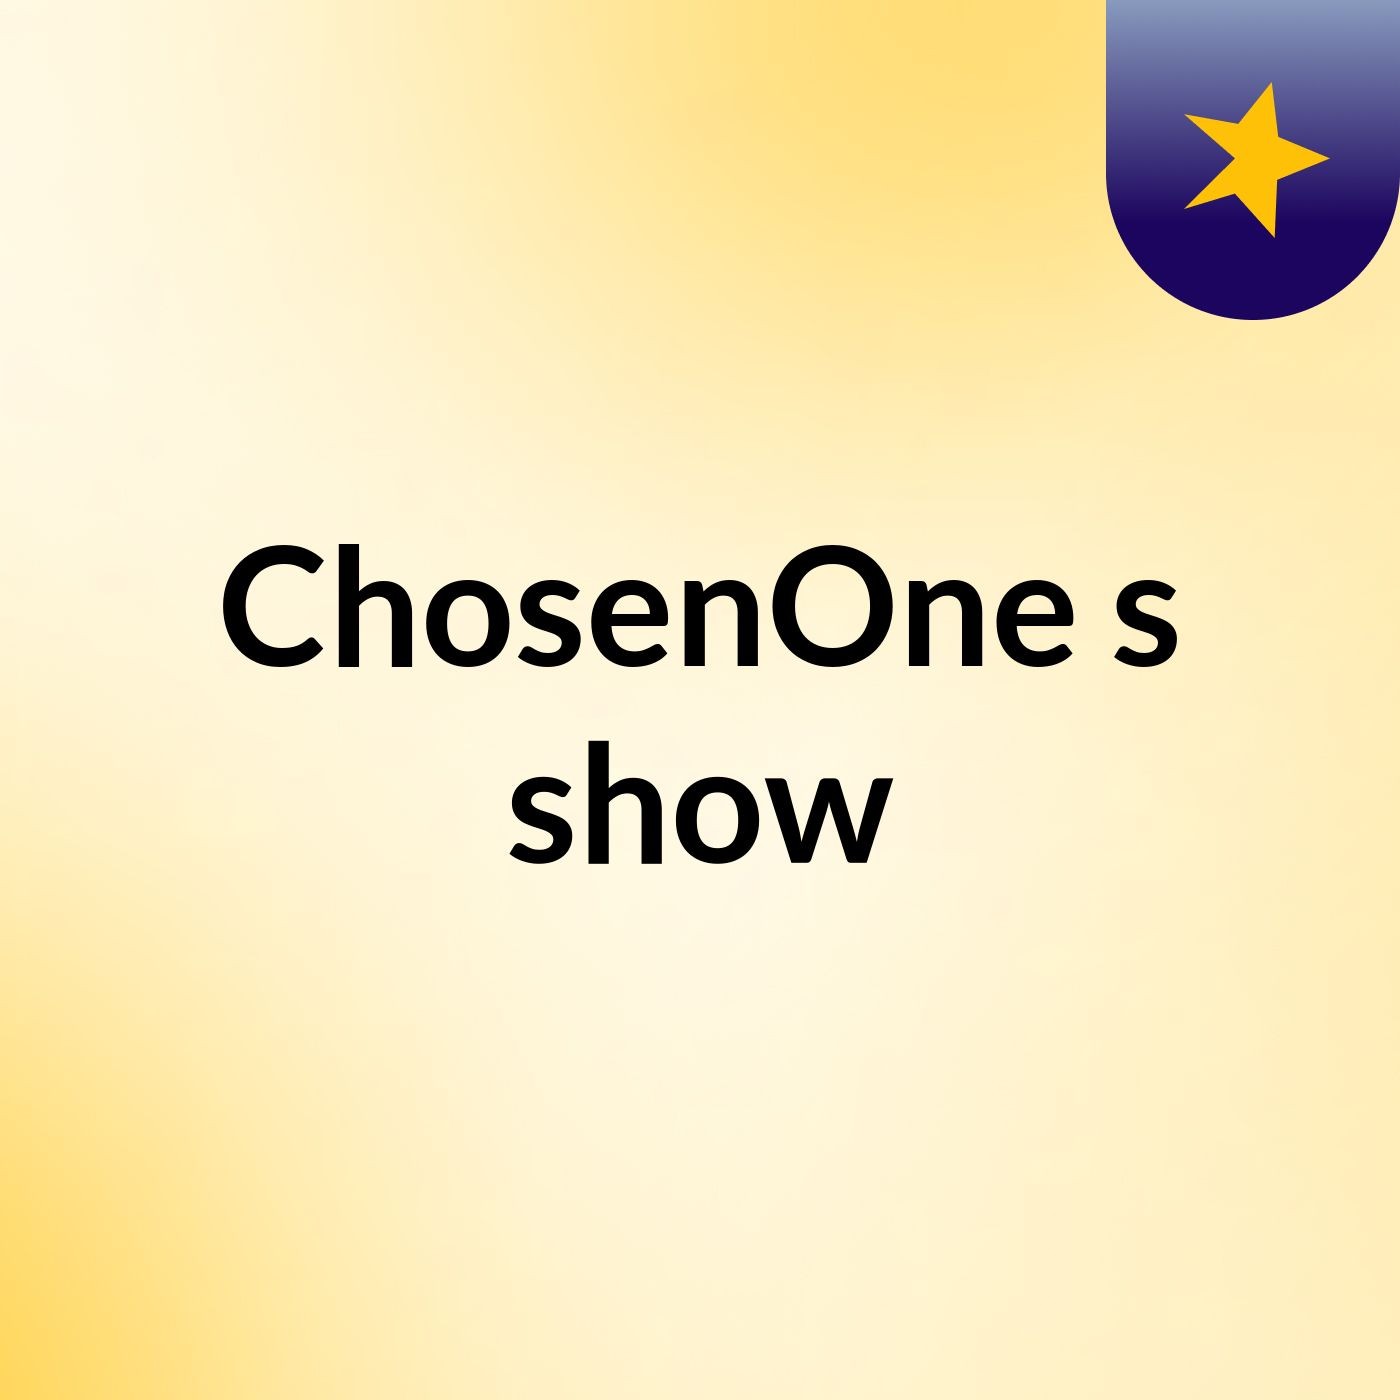 ChosenOne's show